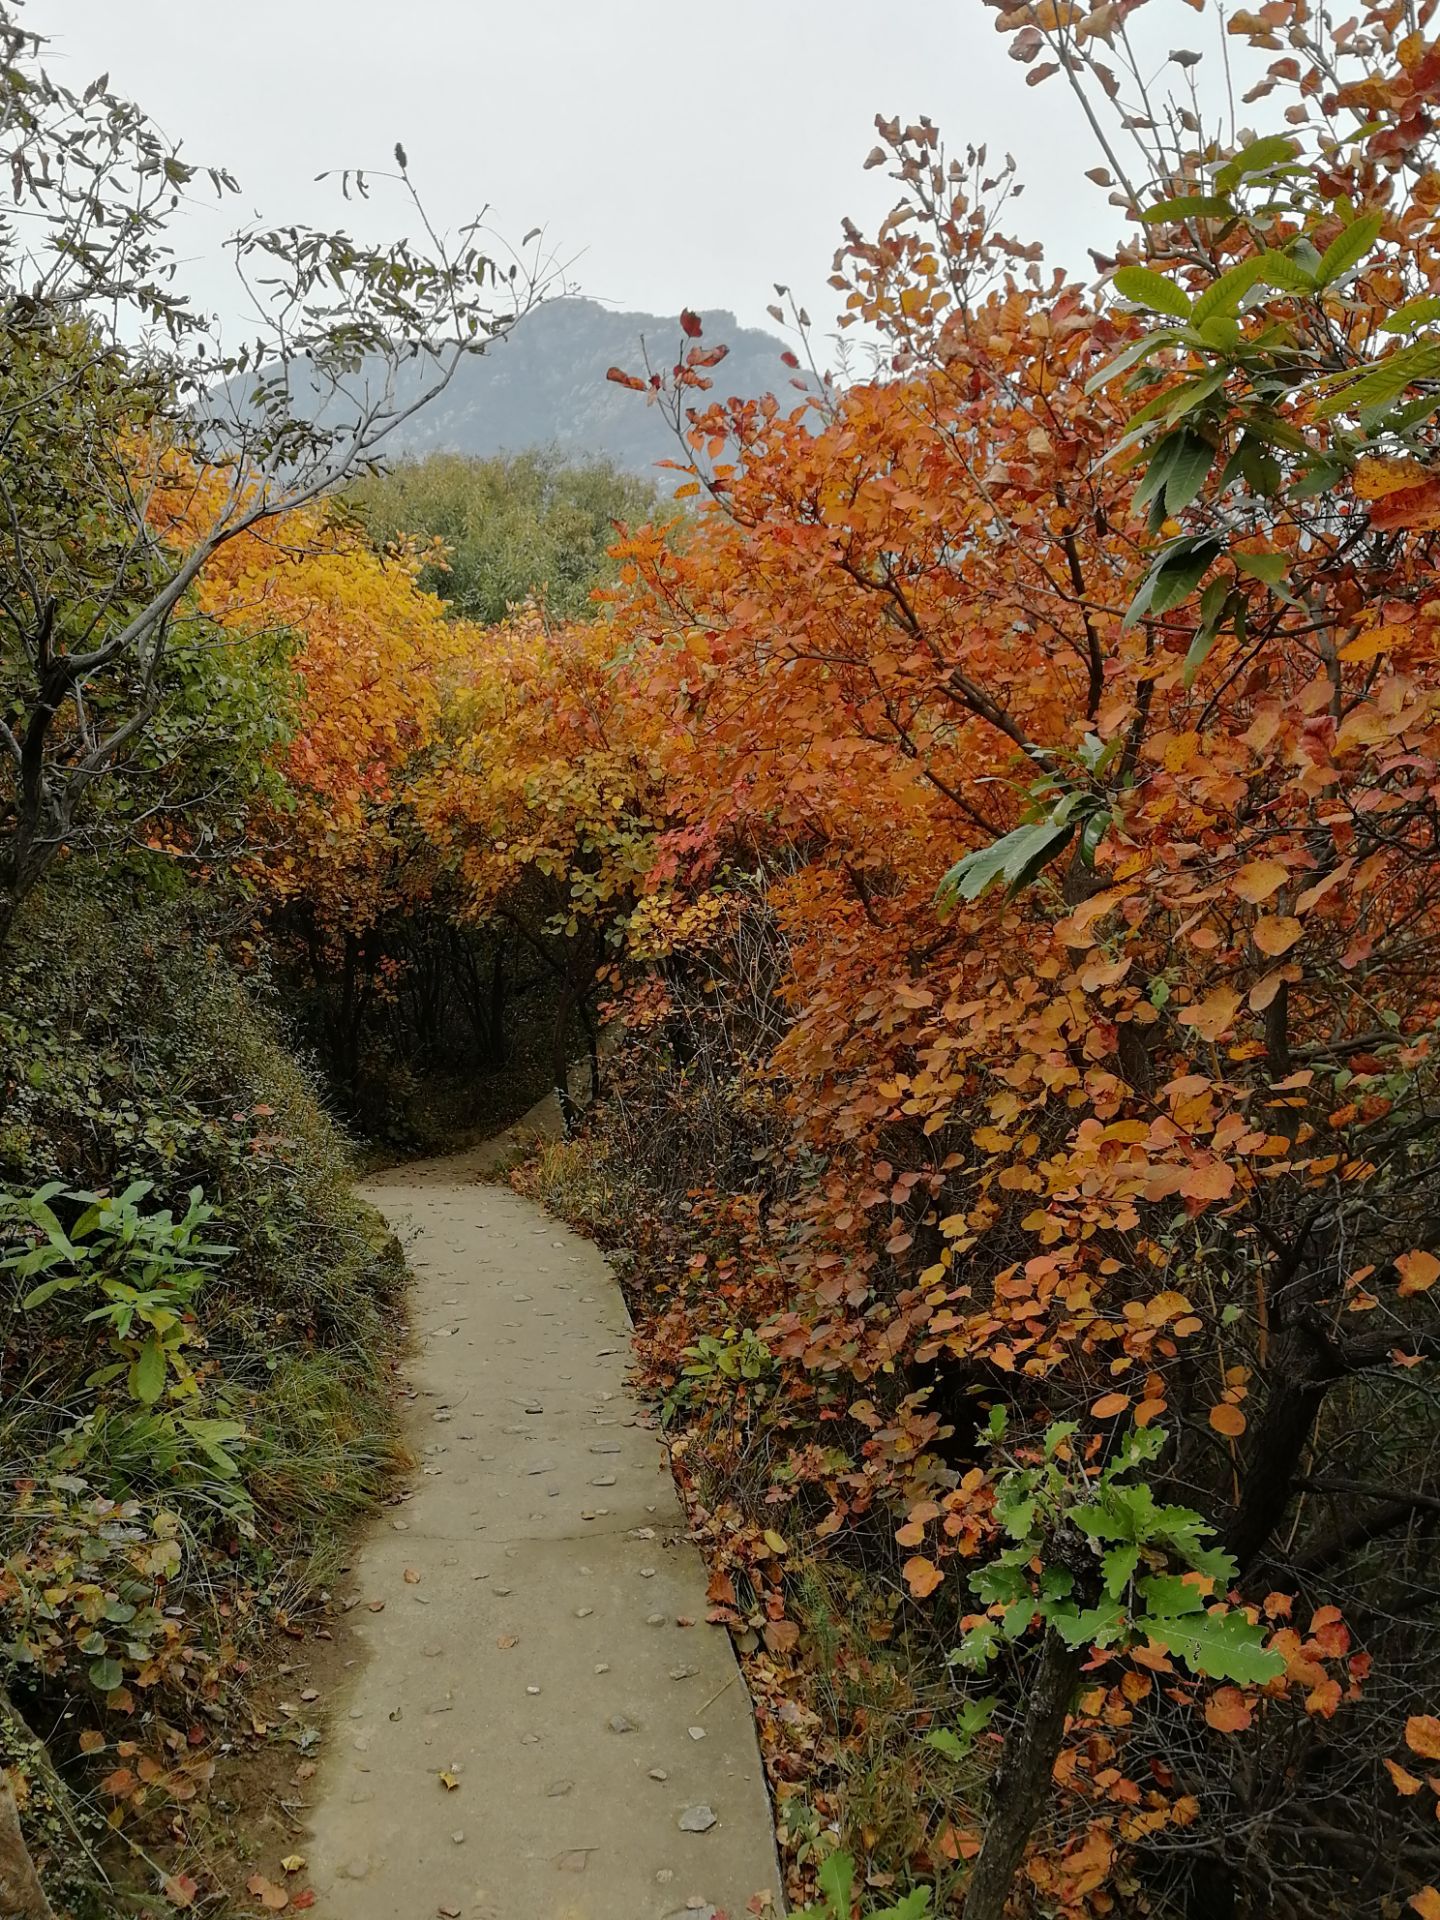 【携程攻略】禹州大鸿寨风景区景点,秋天的大鸿寨有着漫山遍野的红叶，吸引着四面八方游客们的到来。